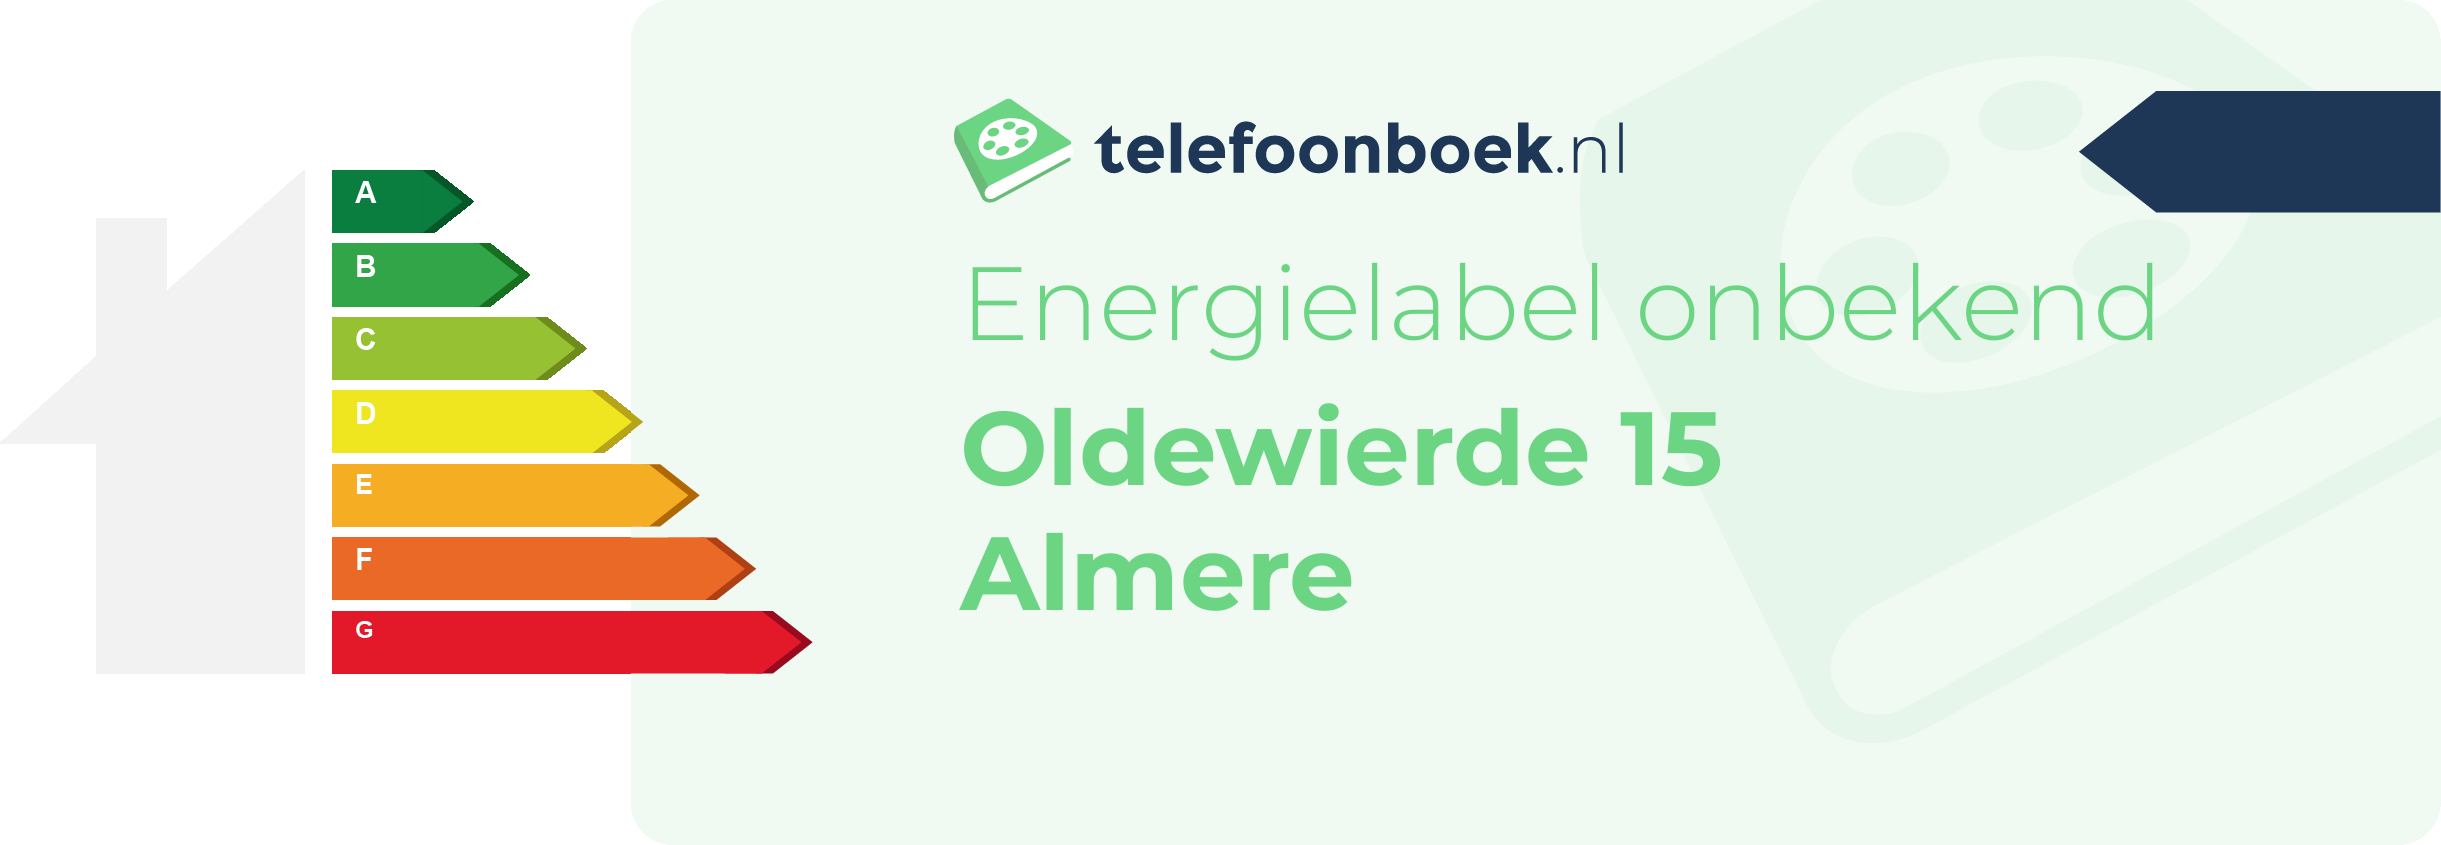 Energielabel Oldewierde 15 Almere